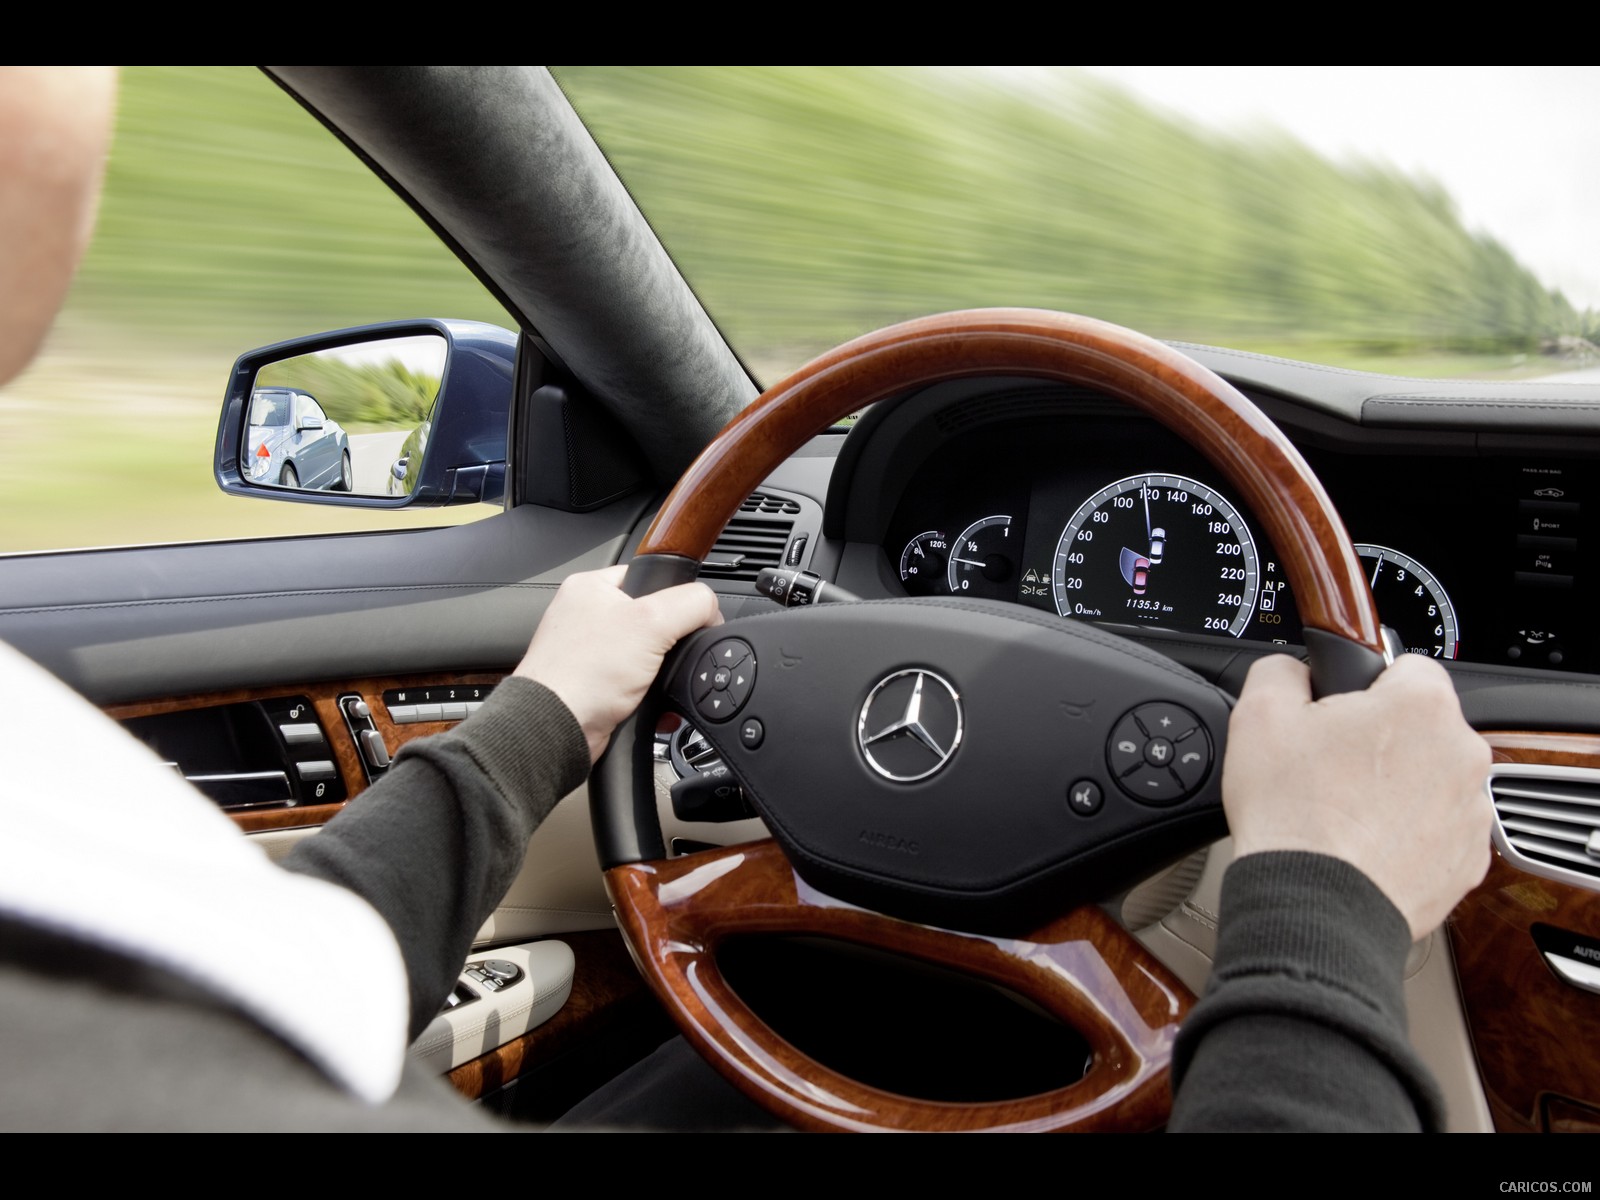 Mercedes Benz CL-Class (2011)  - Steering Wheel, #25 of 34